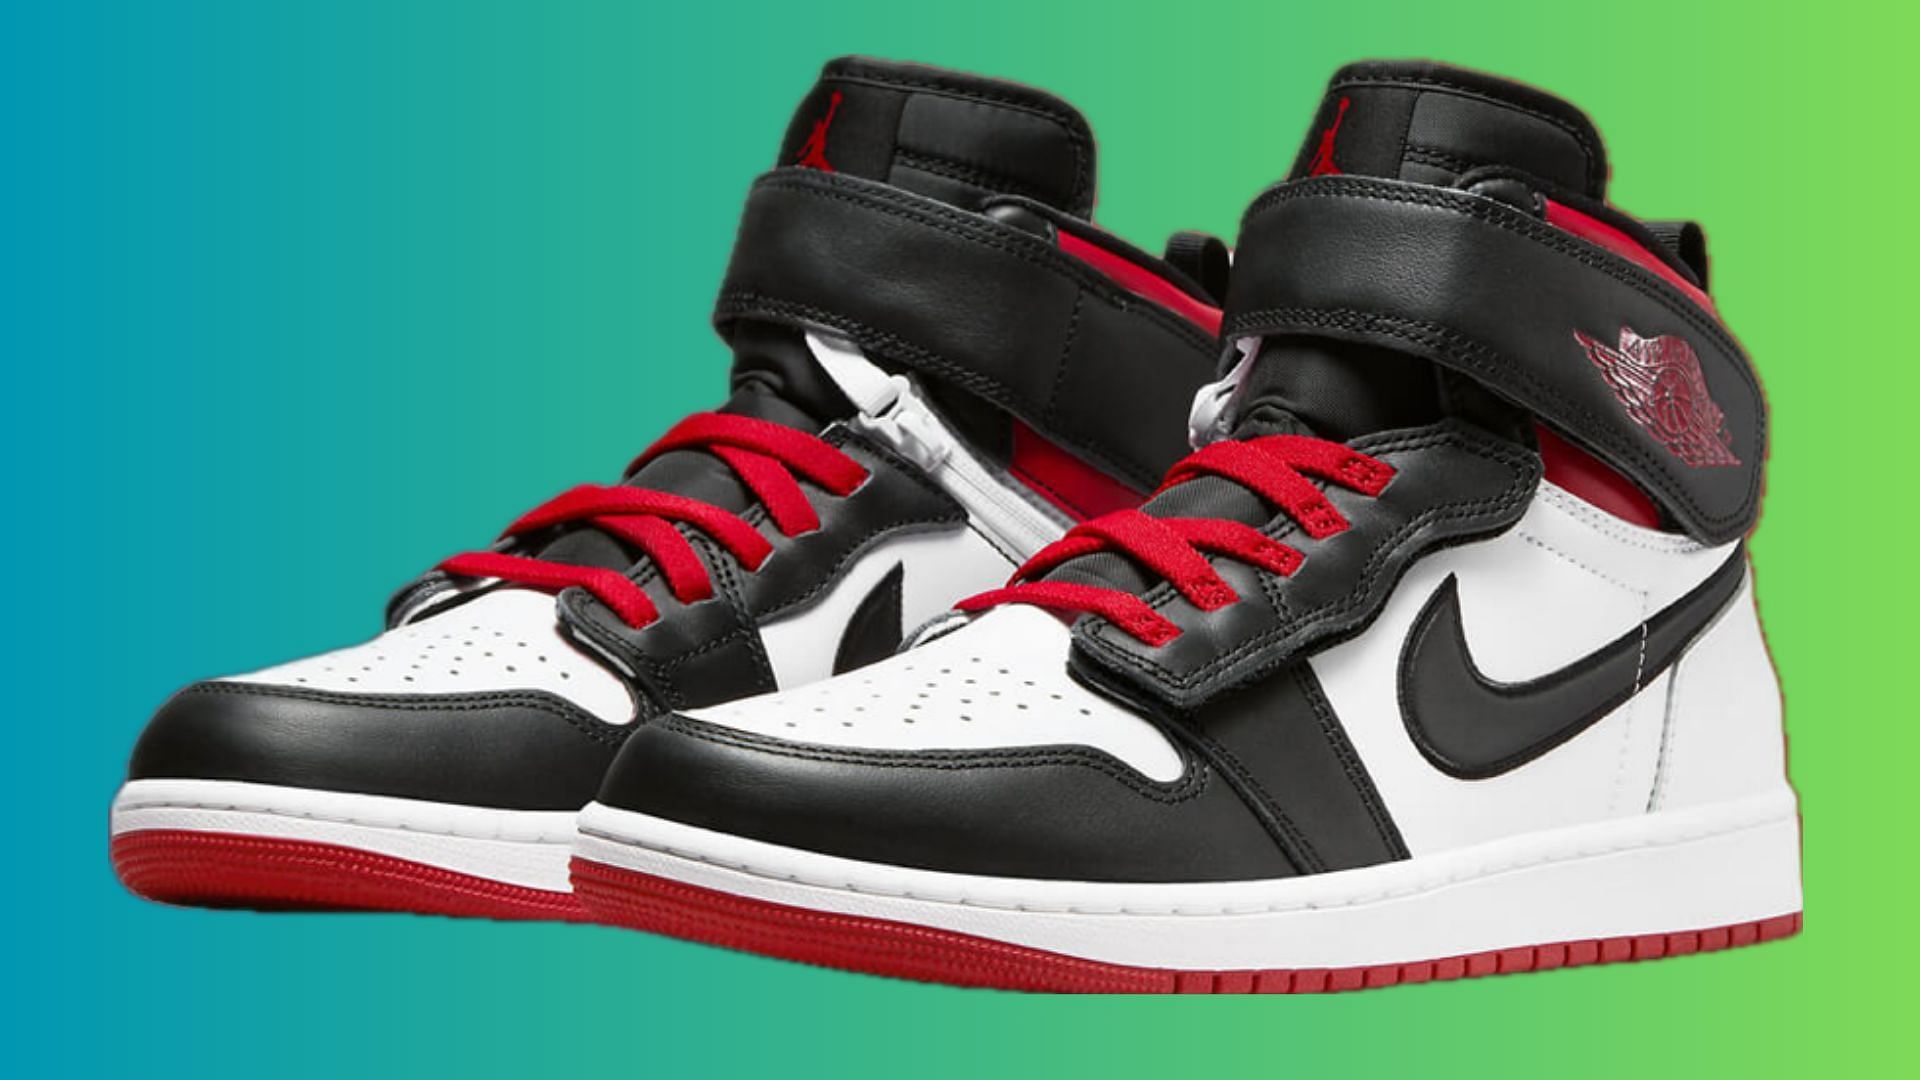 Air Jordan 1 High Flyease Black Toe sneakers (Image via Nike)